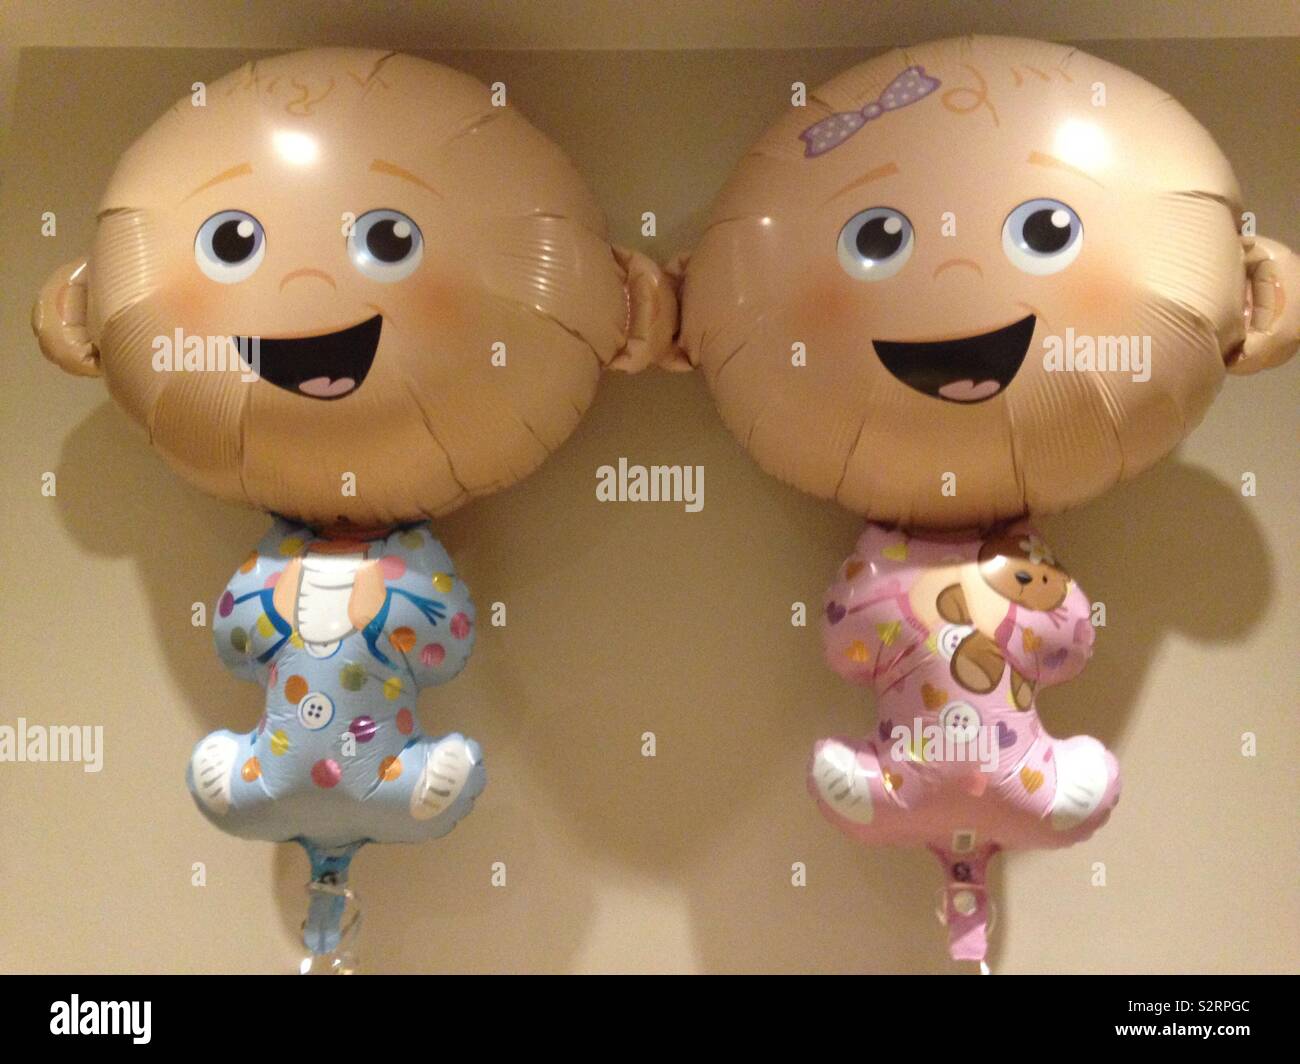 Ideas para decorar Baby shower de niña 👶🏻Ideas to decorate Baby shower  for girl 👶🏻balloon decoration 